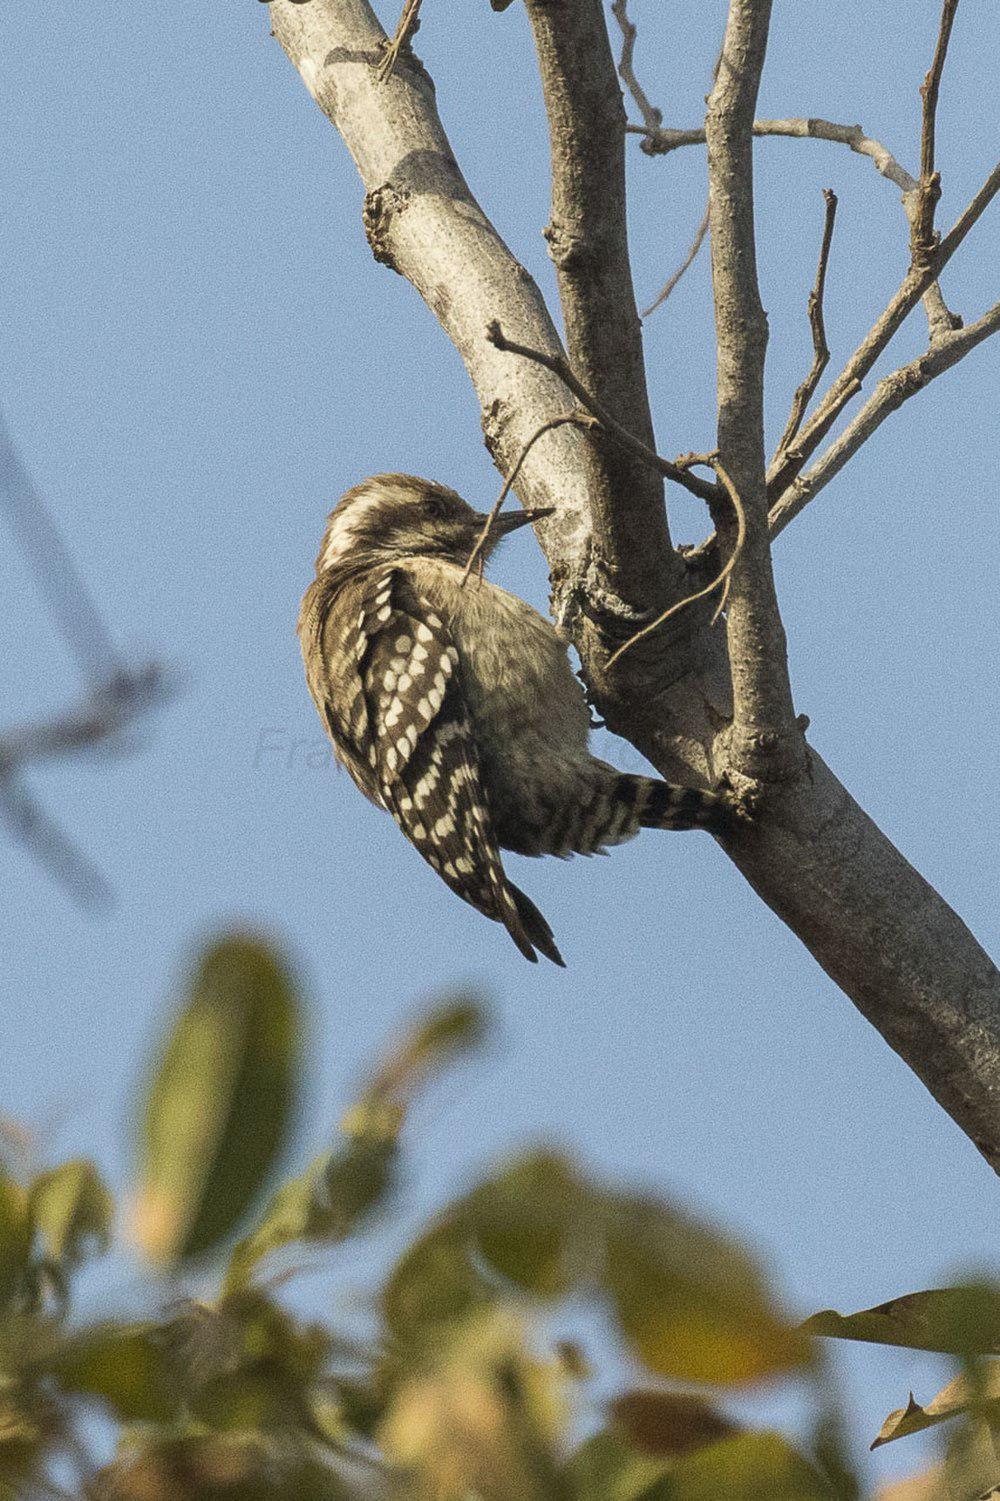 褐背啄木鸟 / Brown-backed Woodpecker / Dendropicos obsoletus